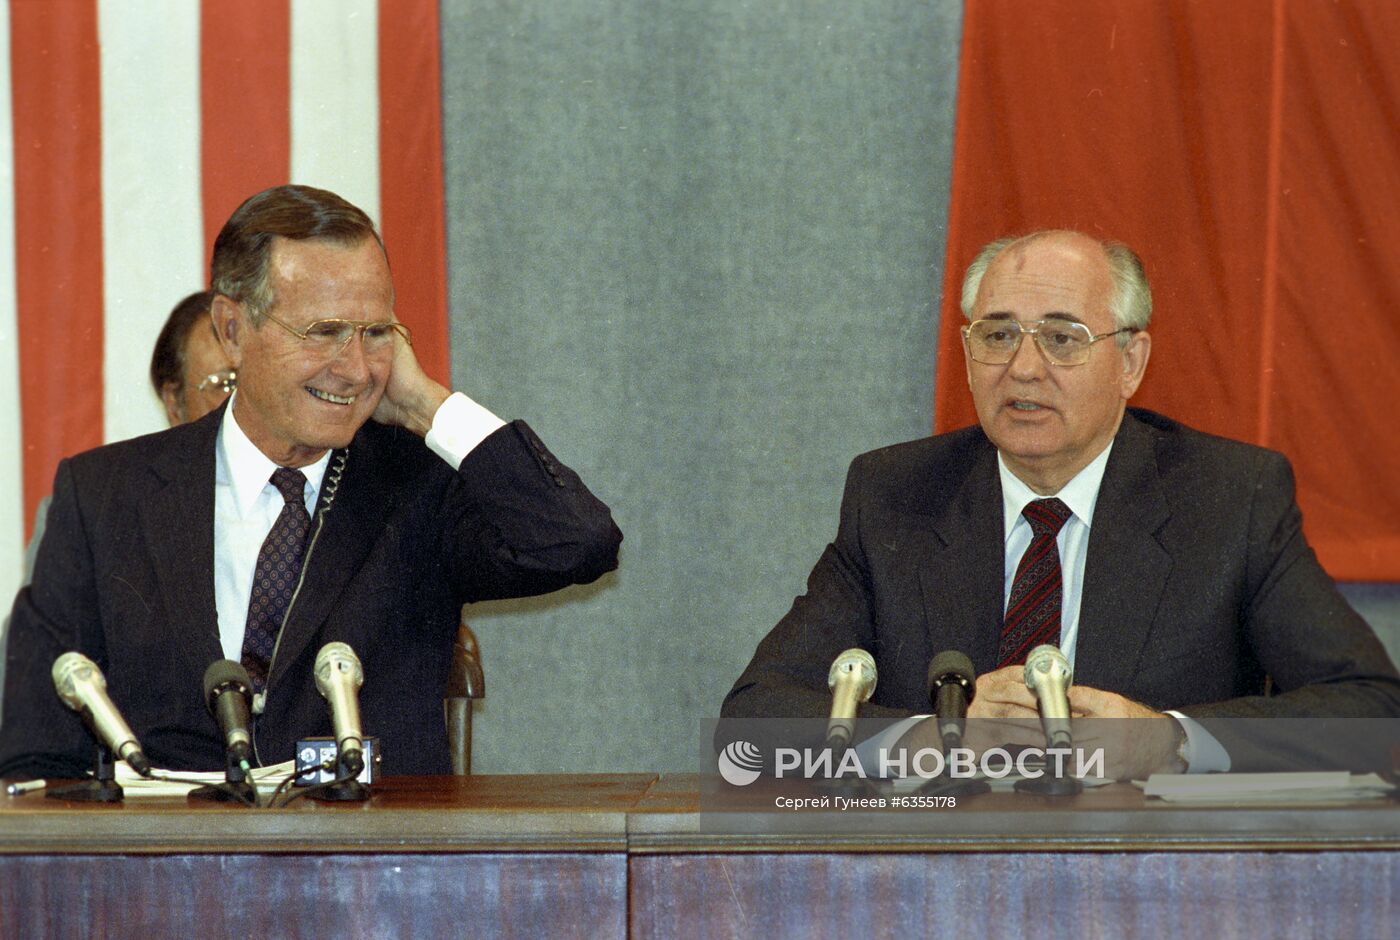 Официальный визит президента США Джорджа Буша в СССР